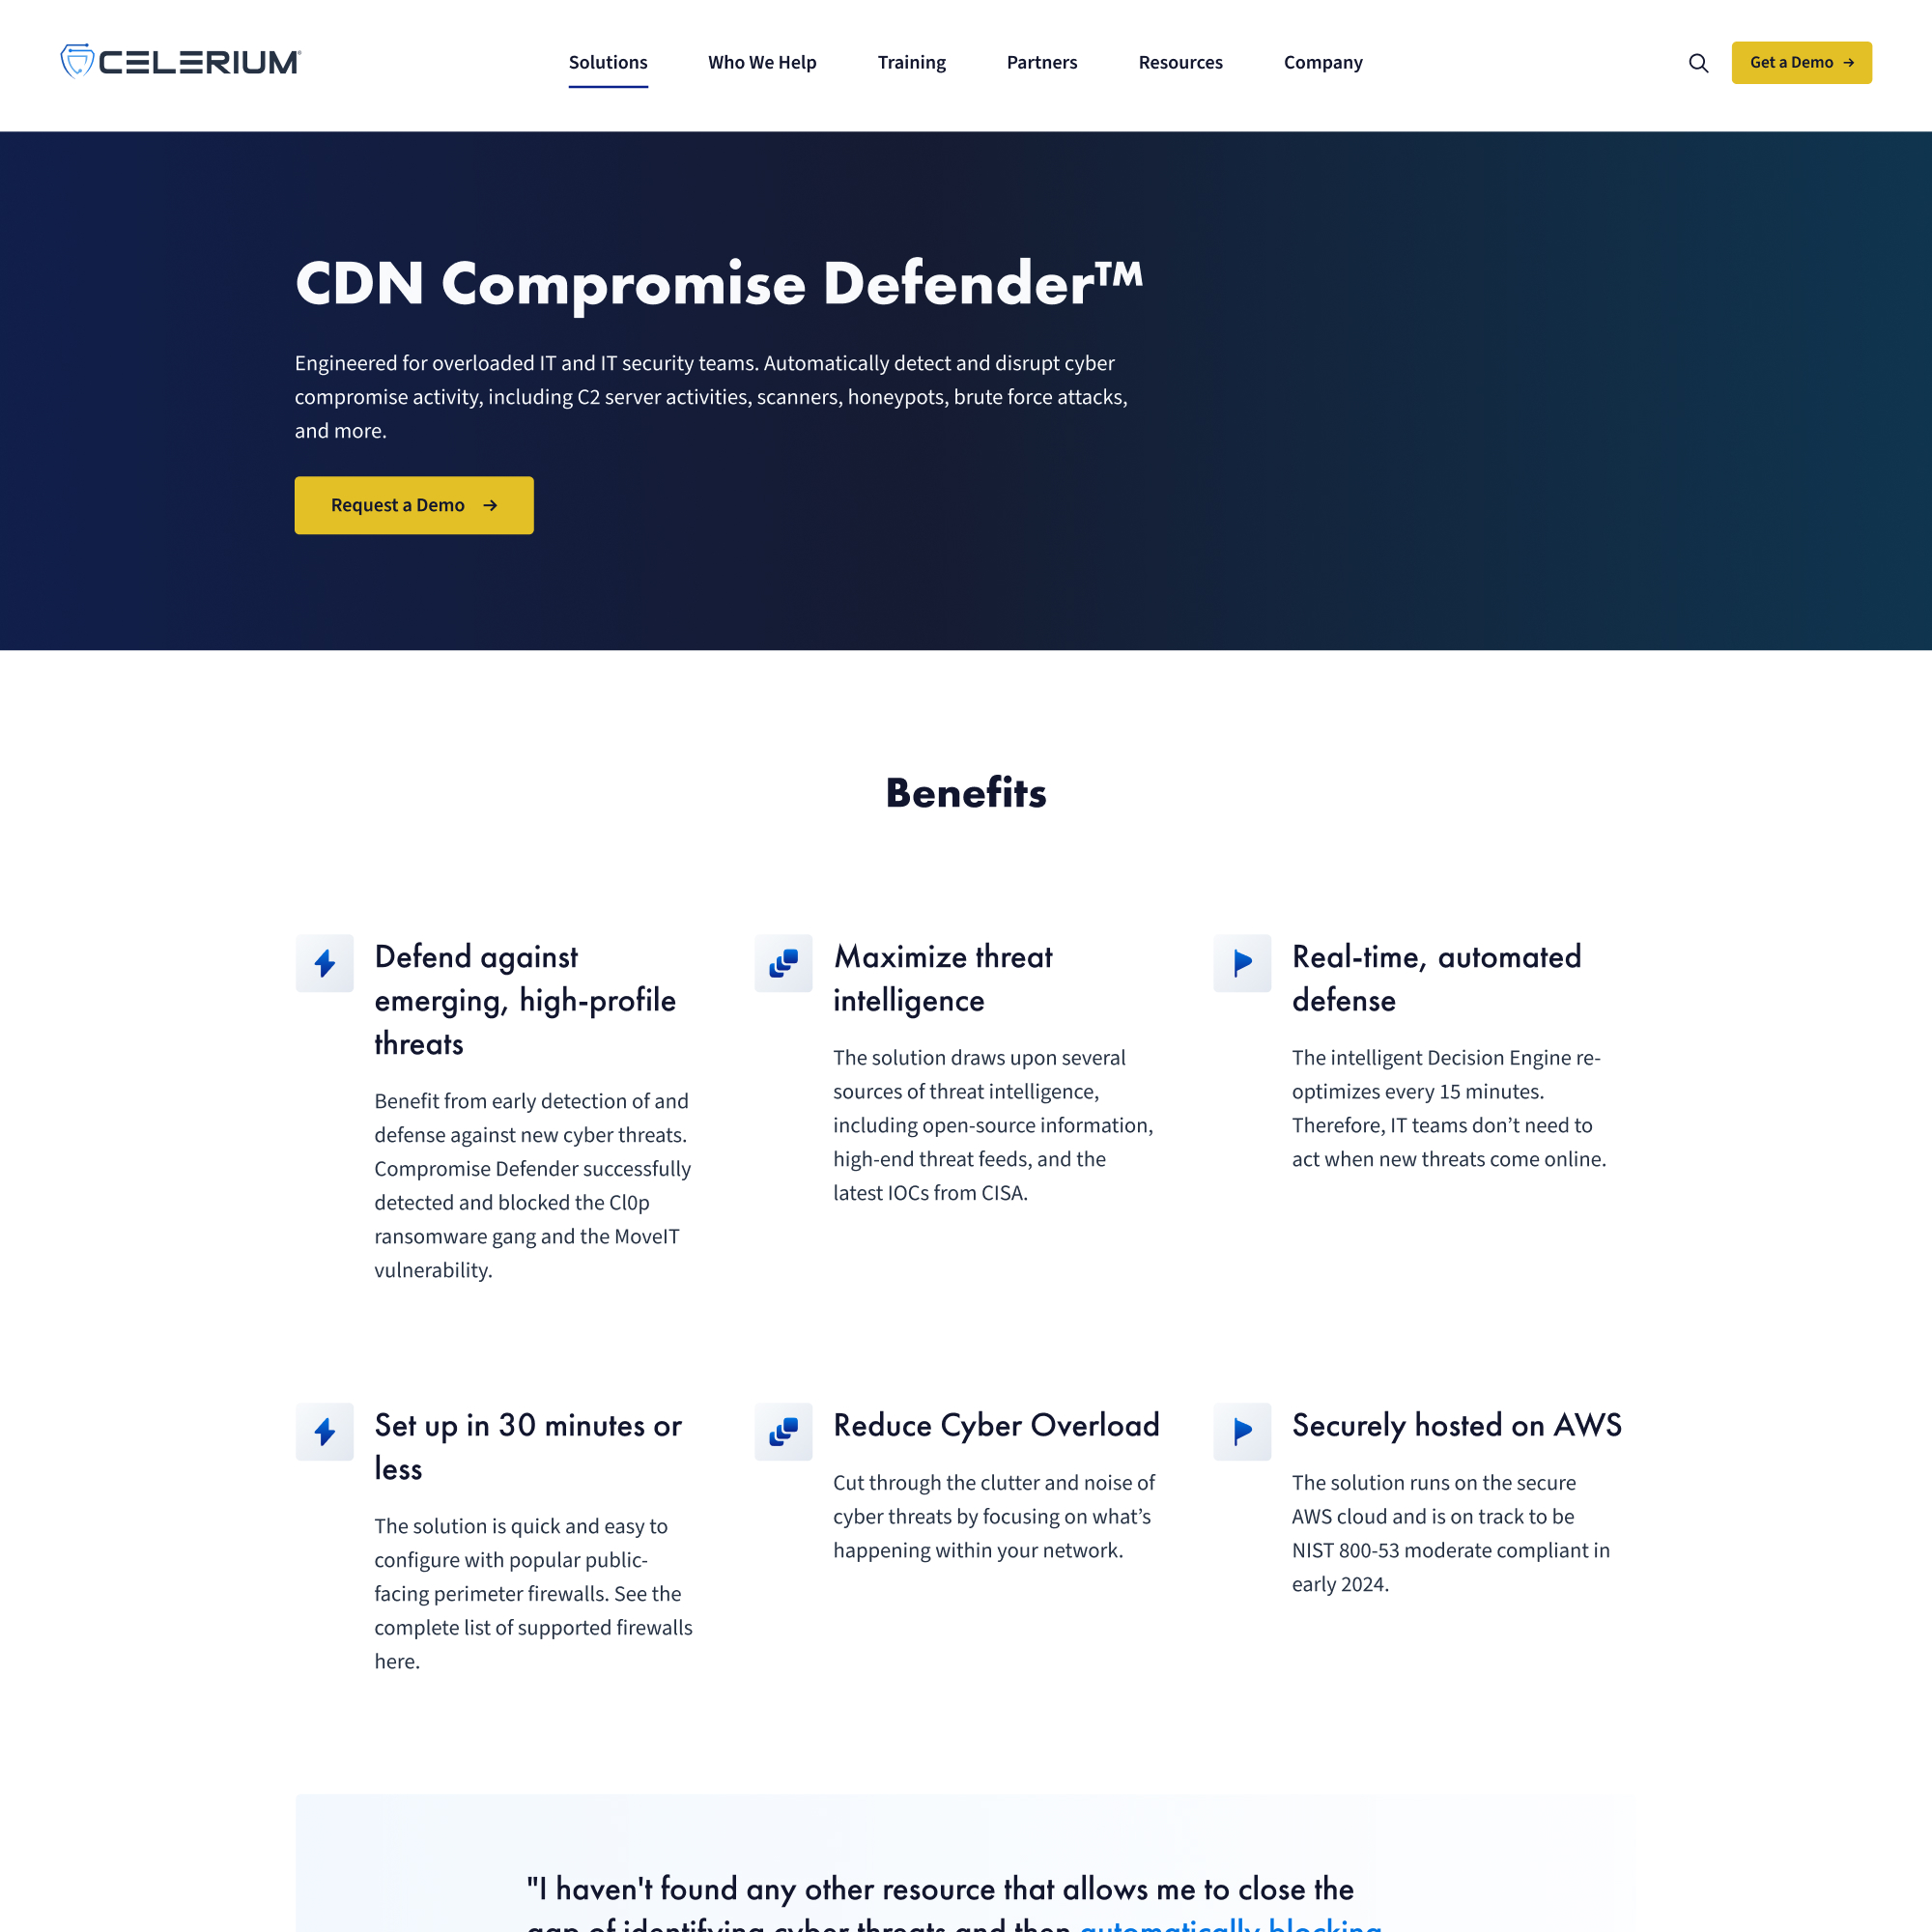 Celerium Website Redesign